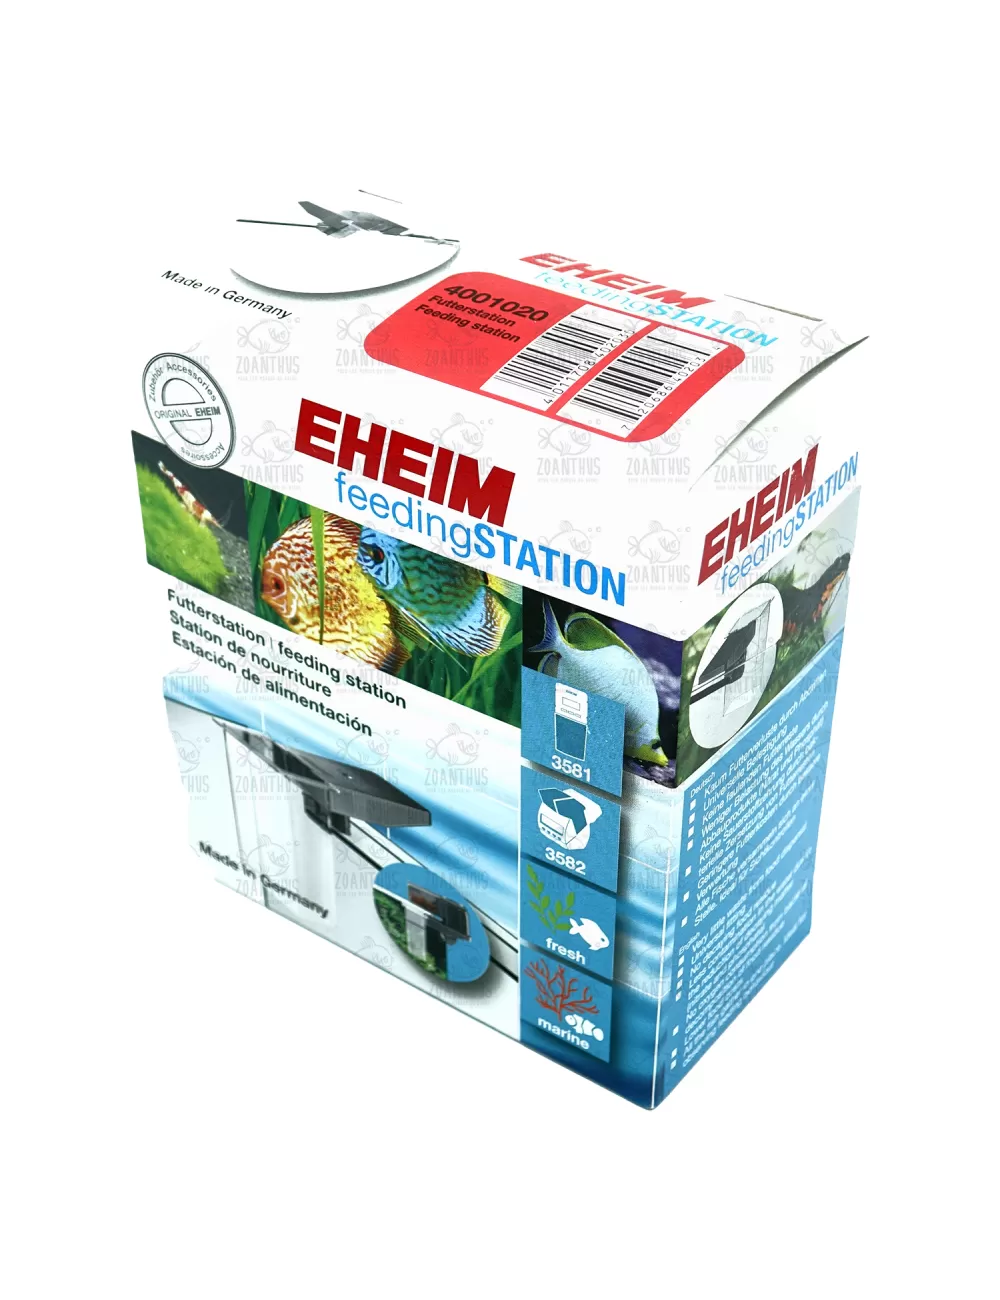 EHEIM 3581 AutoFeeder - Distributeur automatique aquarium